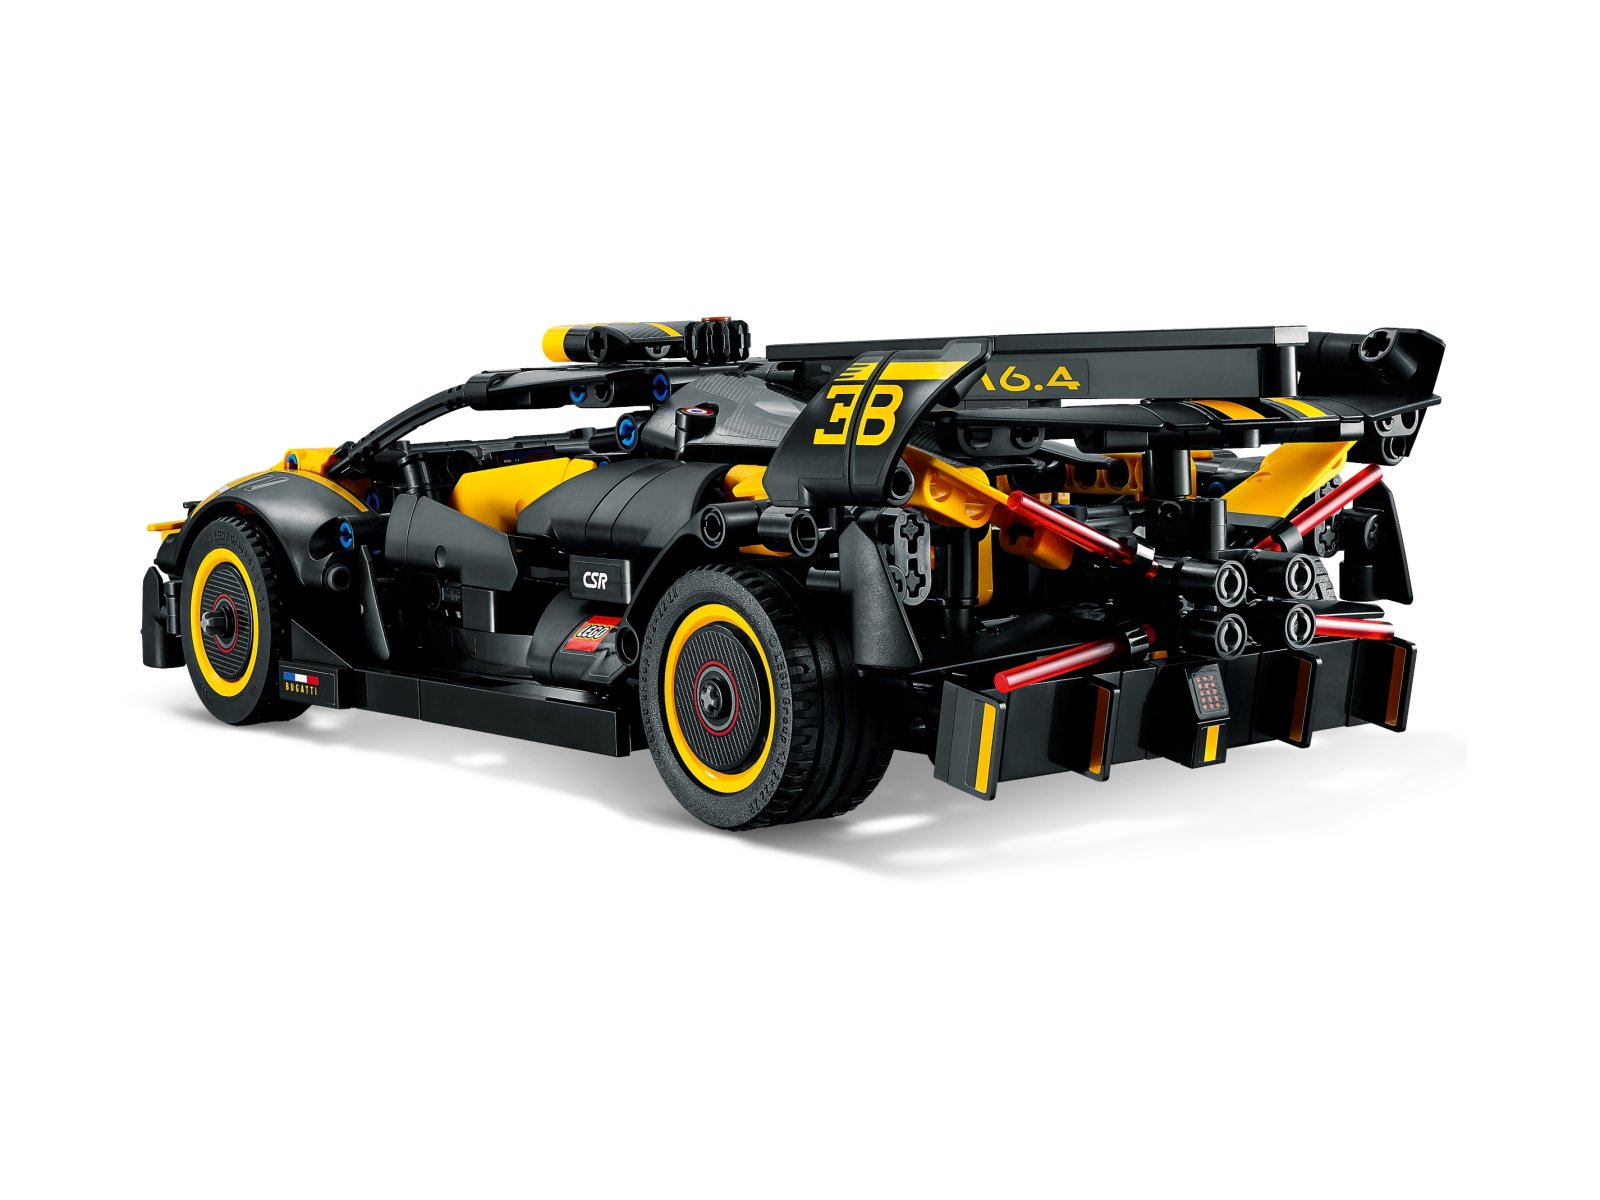 LEGO 42151 Bolid Bugatti